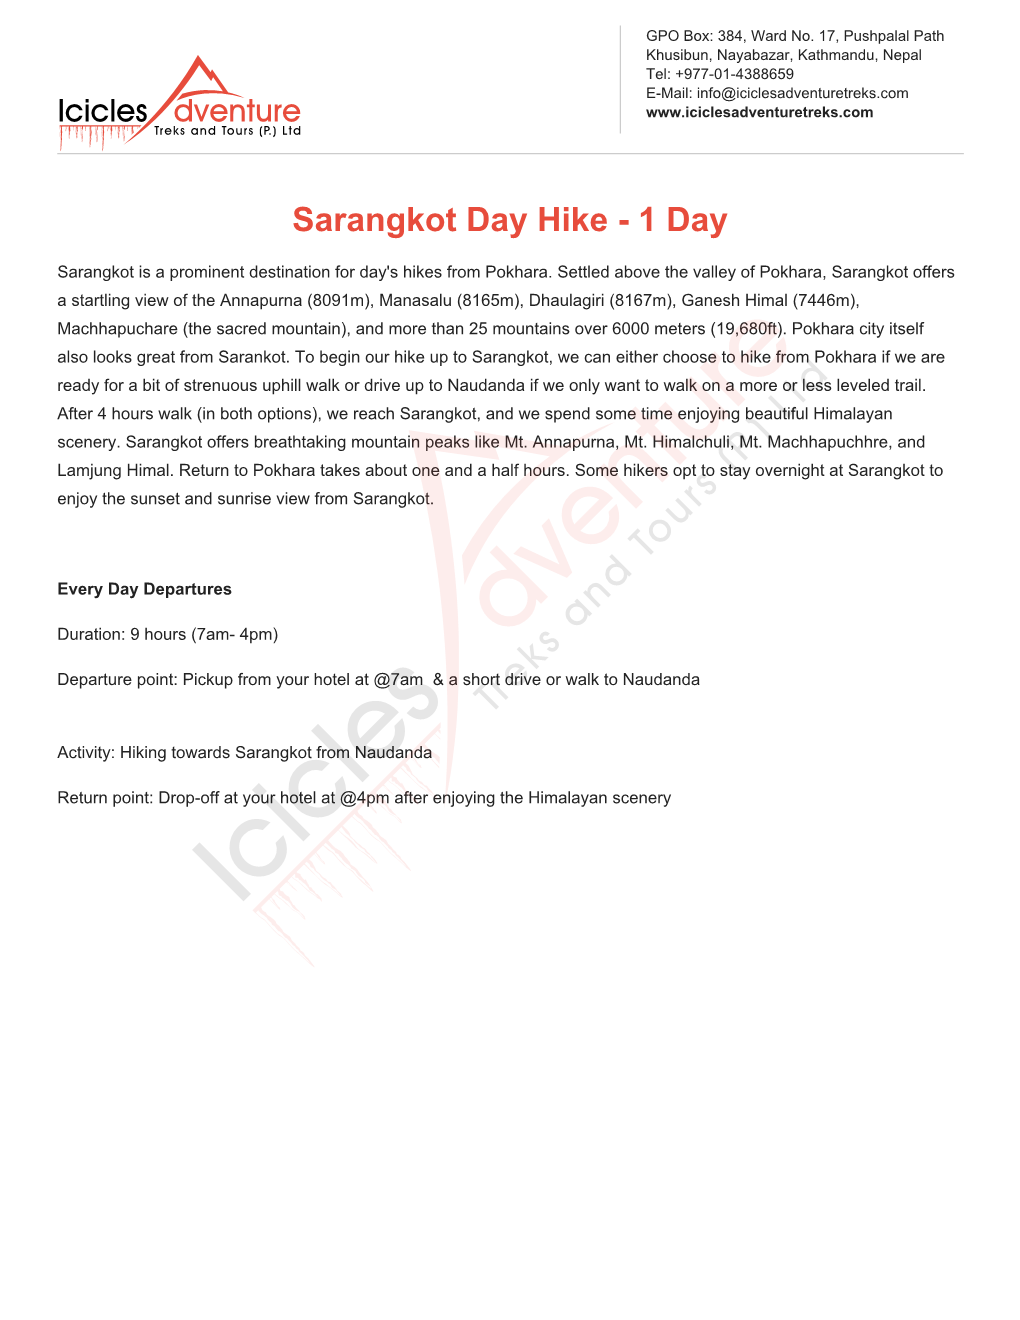 Sarangkot Day Hike - 1 Day